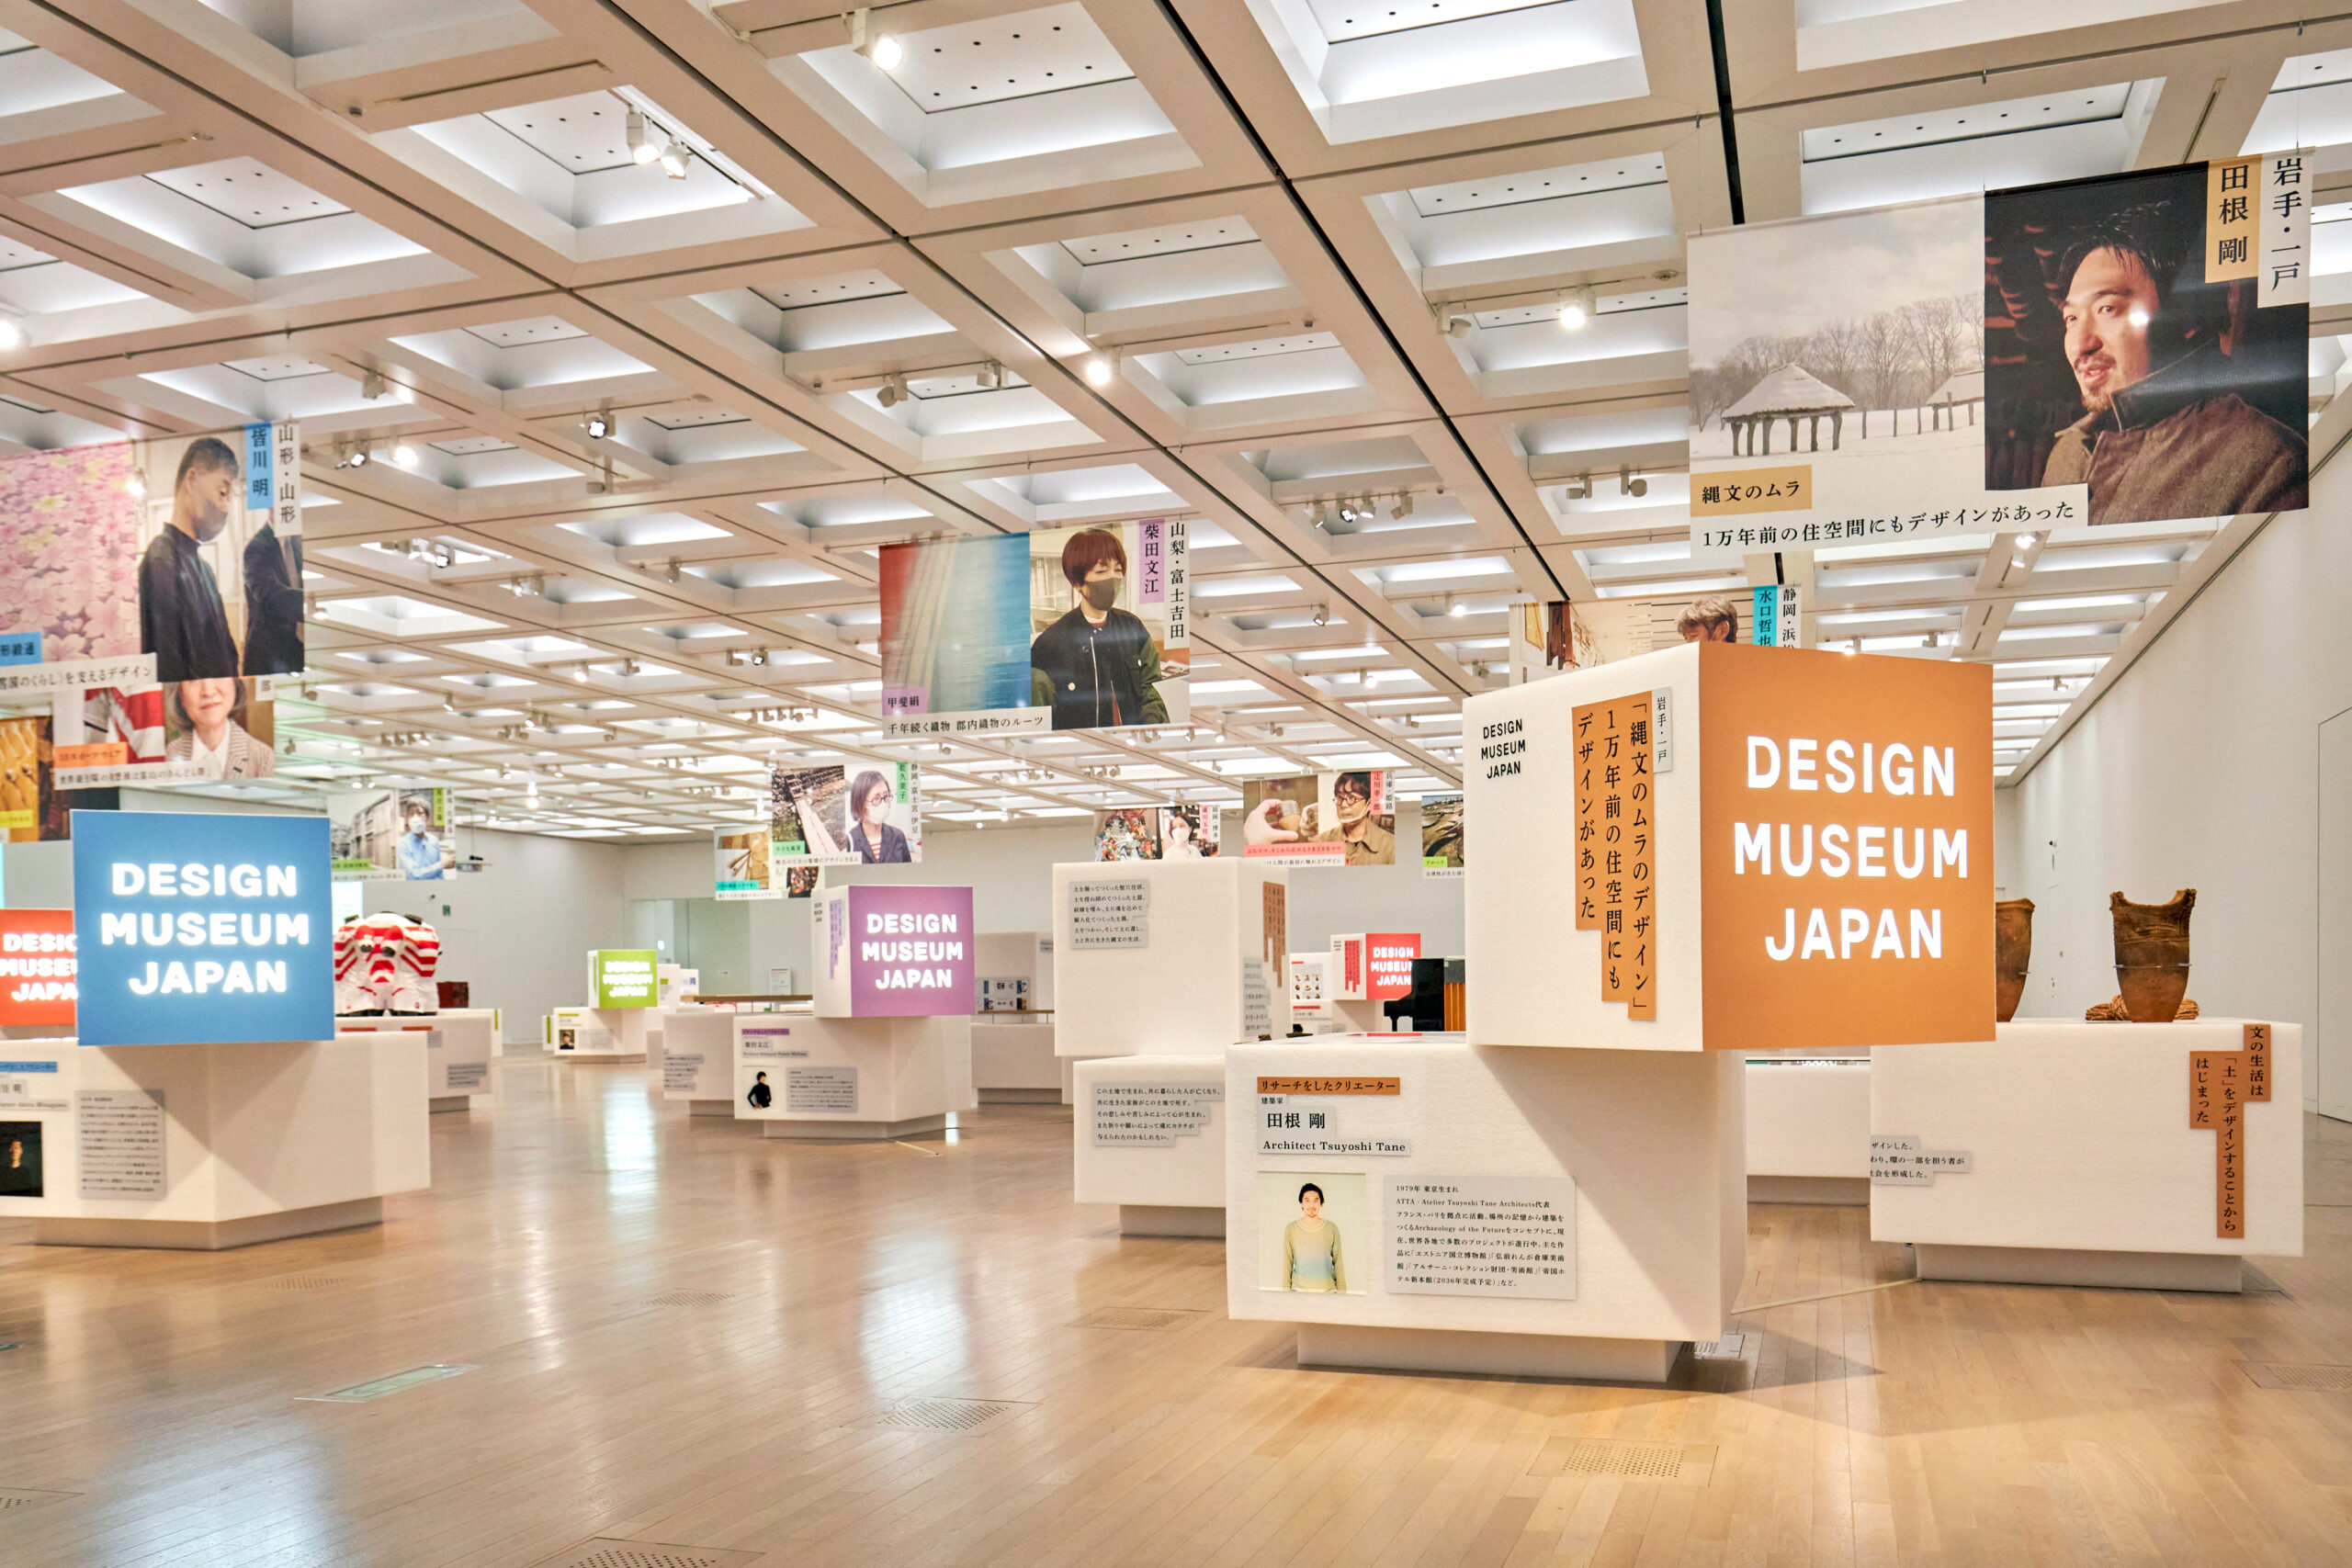 Japan House São Paulo recebe a mostra “Design Museum Japan: investigando o design japonês” sobre histórias do design japonês